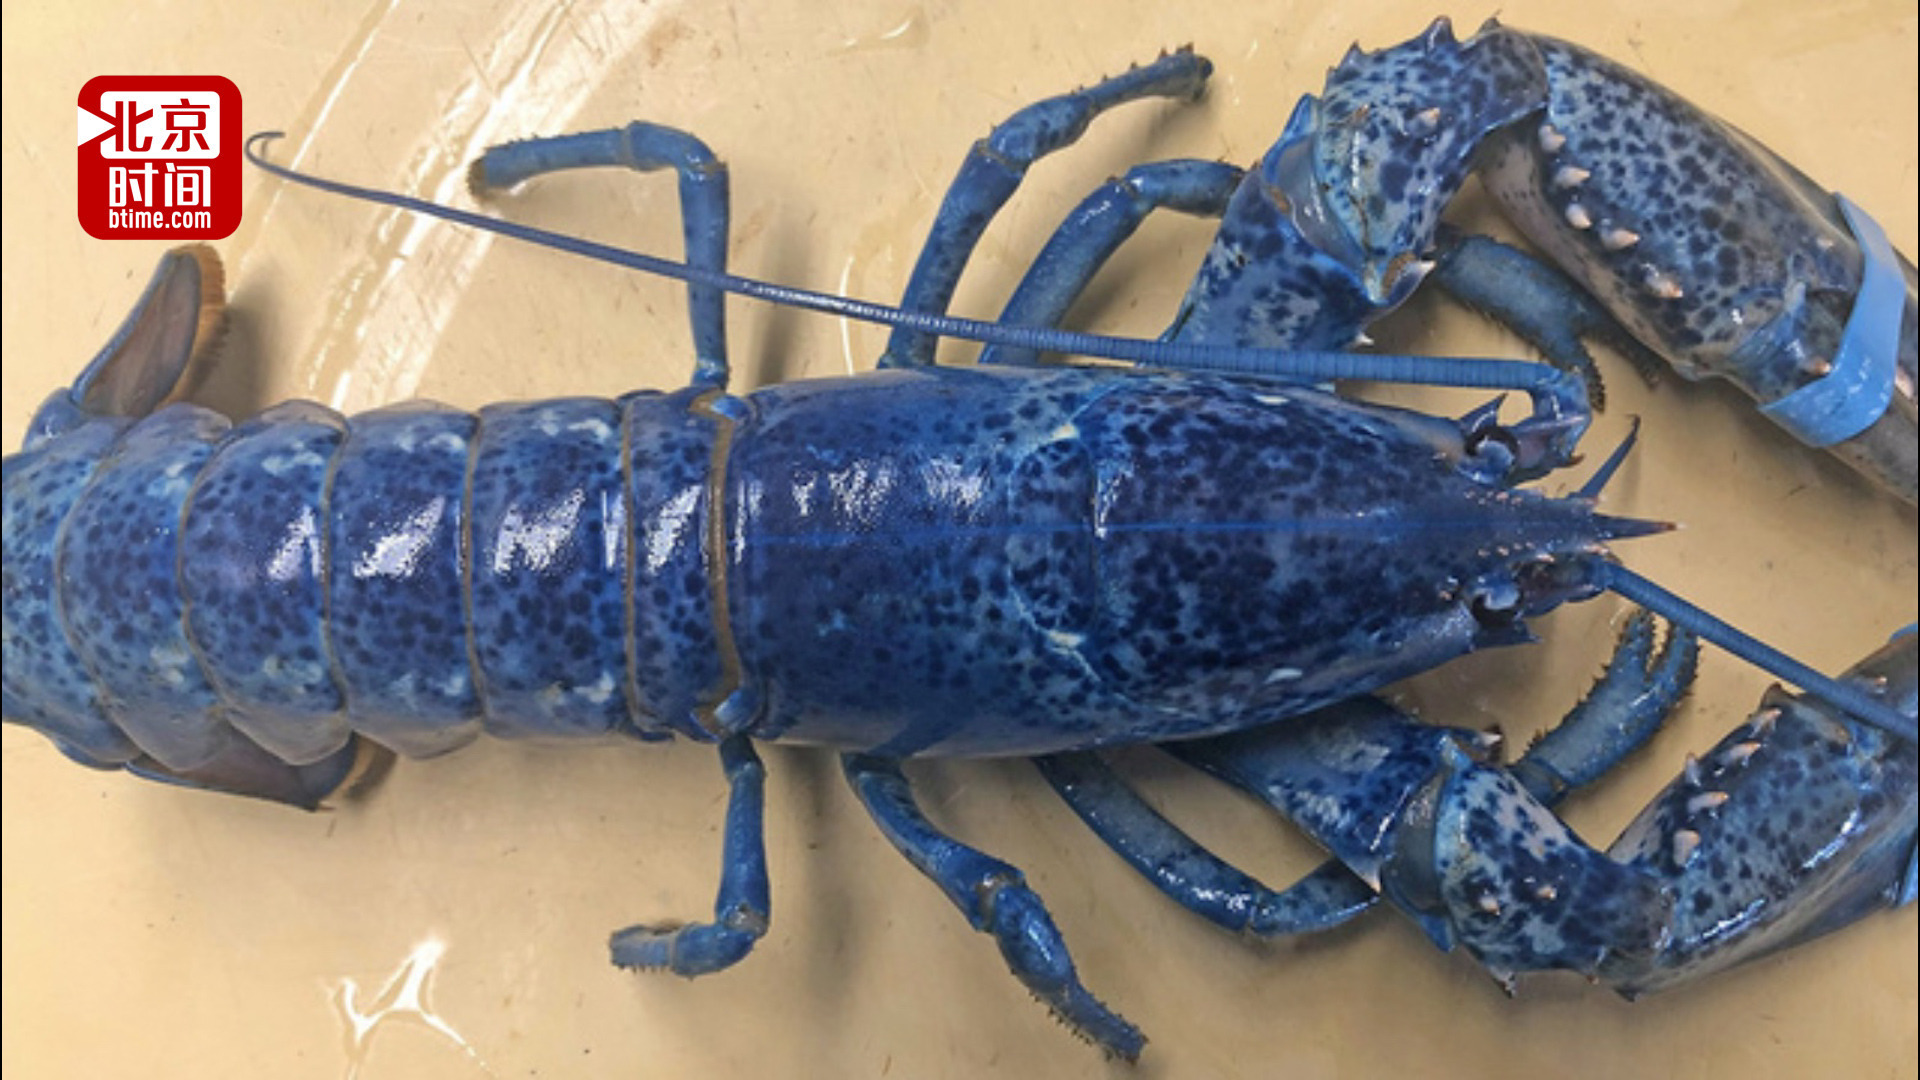 媲美活化石!美国海鲜餐厅老板捐出200万分之一极稀有蓝色龙虾